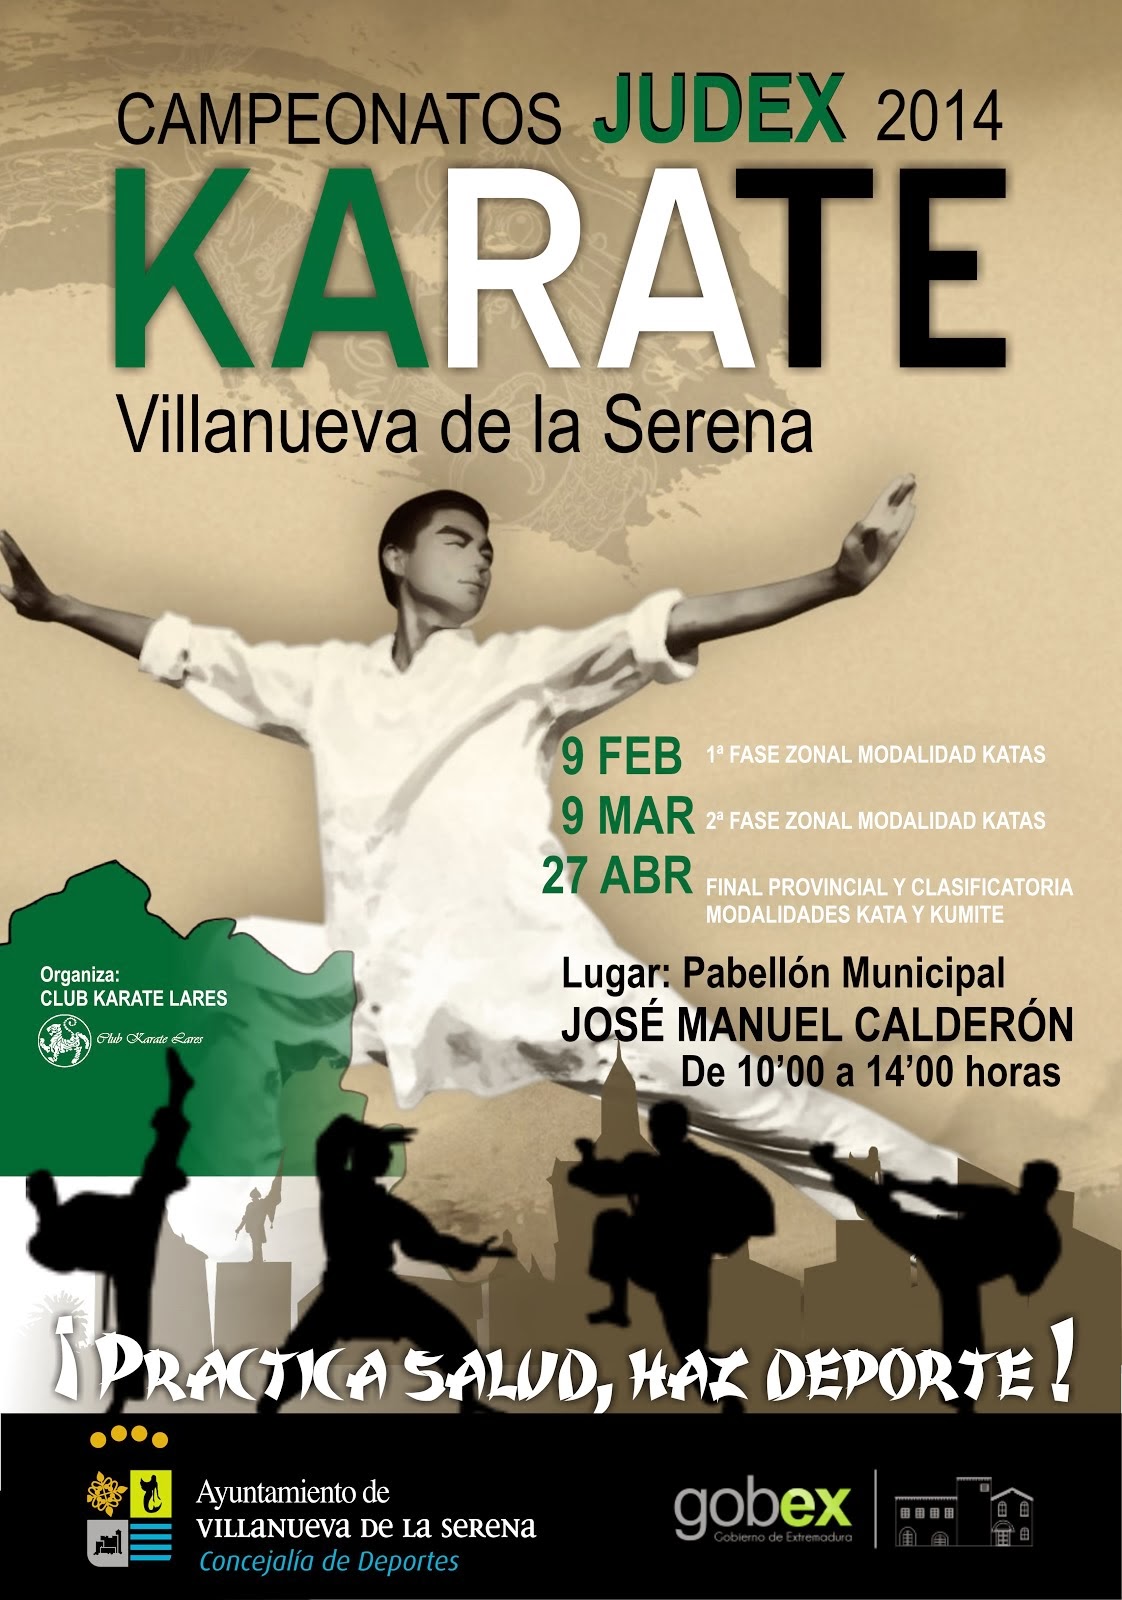 Judex Campeonato de KARATE 2014